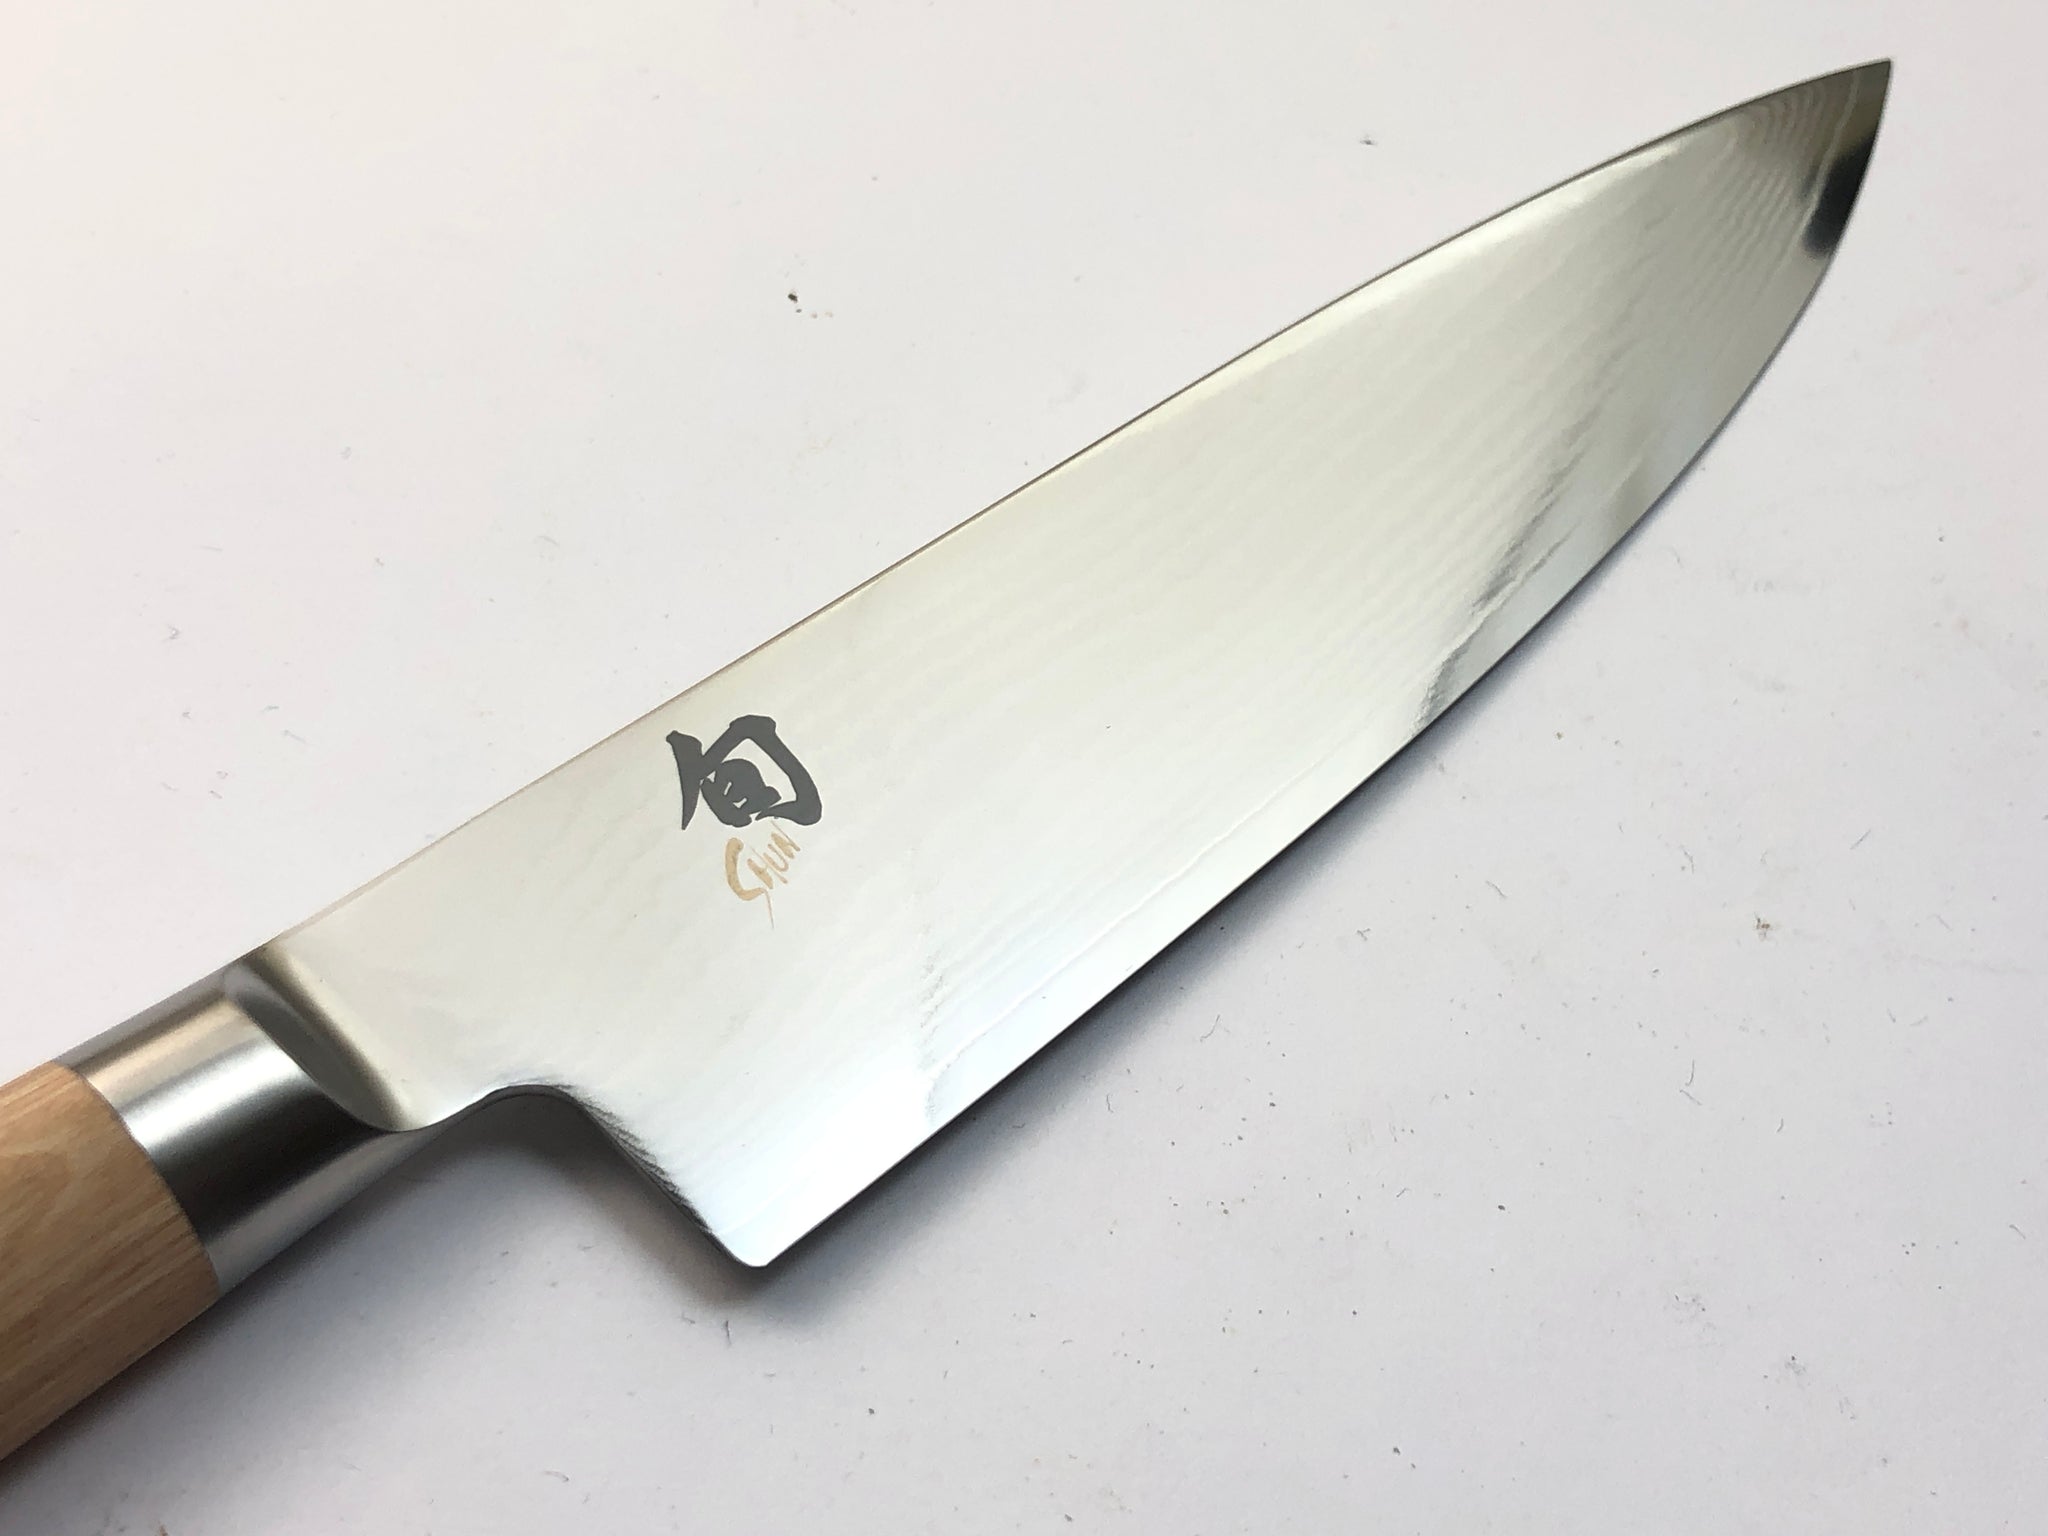 Shun Kai Classic White Chef Knife 20cm